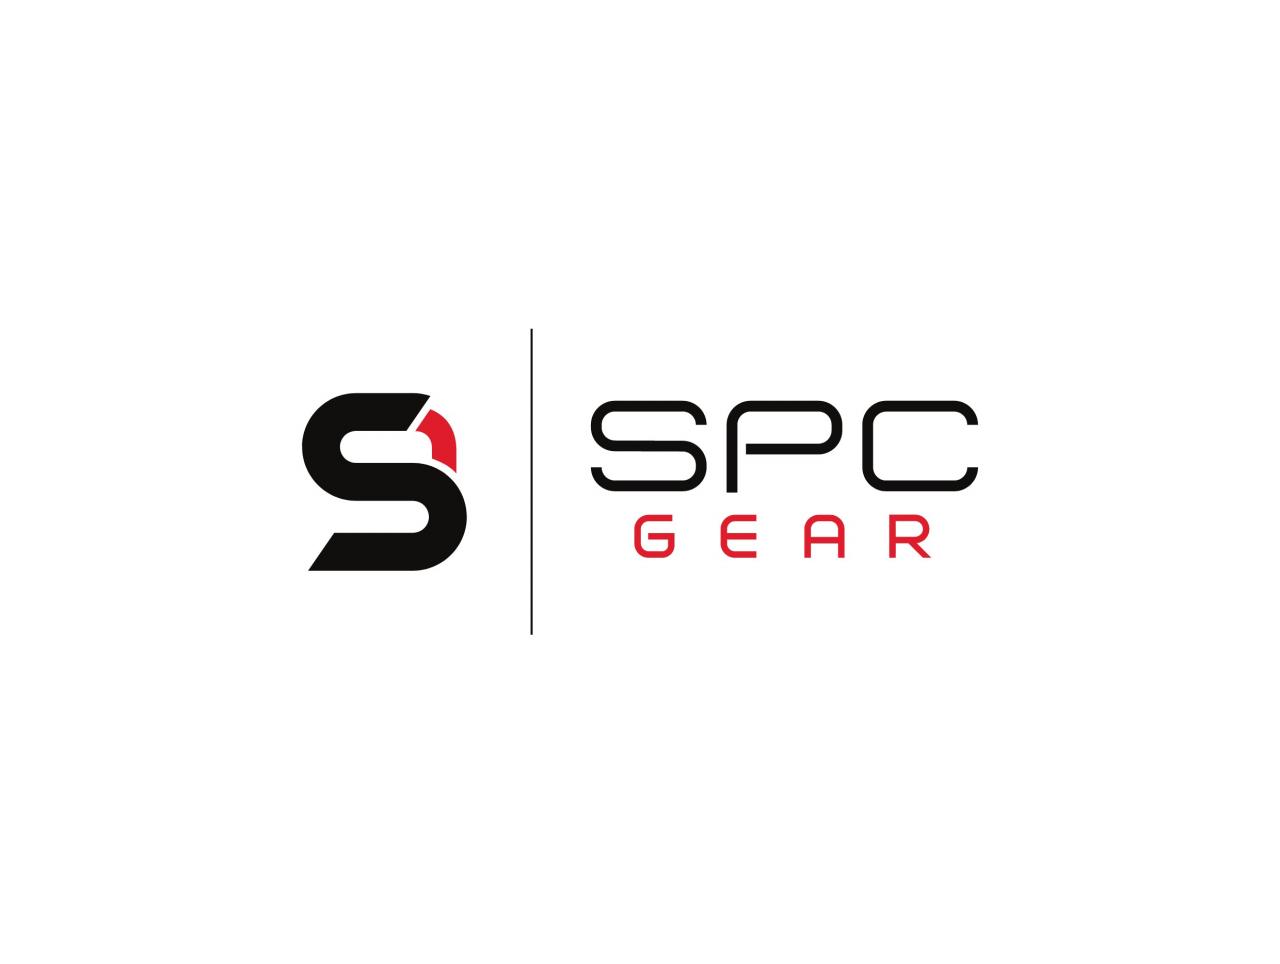 SPC GEAR - sprrawdź wszystkie promocje